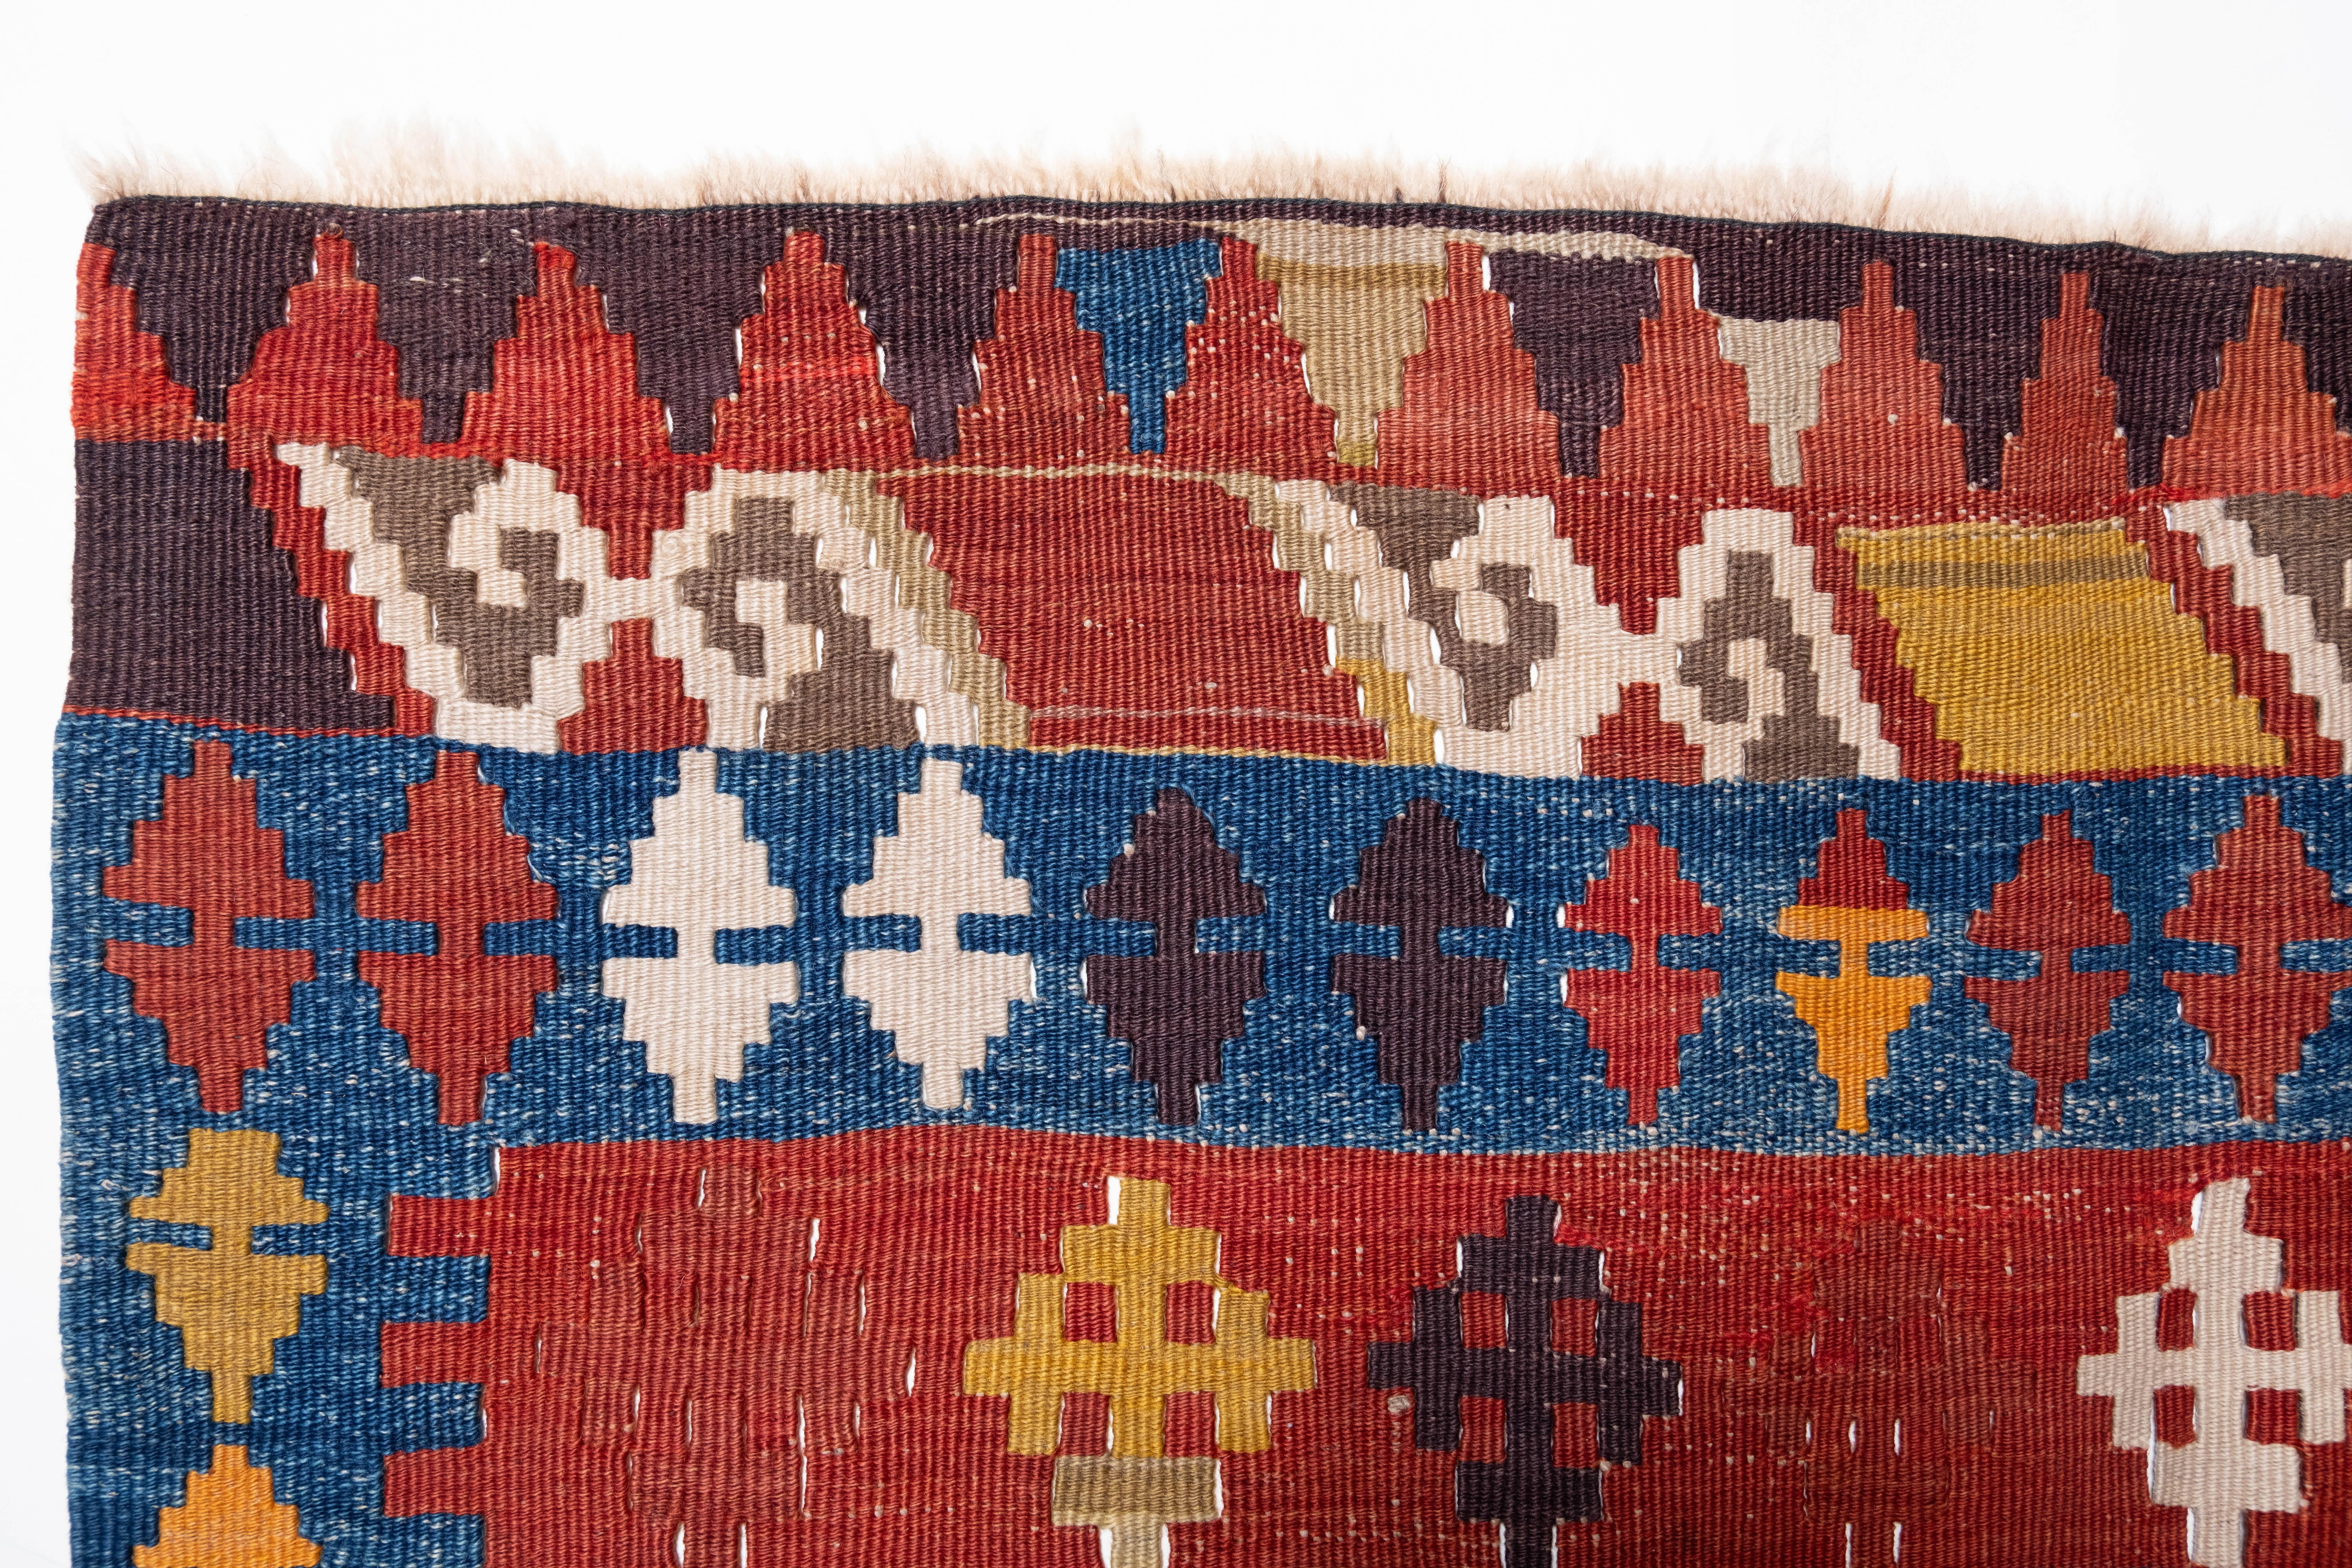 Il s'agit d'un Kilim Mihrab ancien d'Anatolie centrale dont la composition des couleurs est rare et magnifique.

Ce kilim antique de grande collection présente de merveilleuses couleurs et textures particulières, typiques d'un kilim ancien en bon